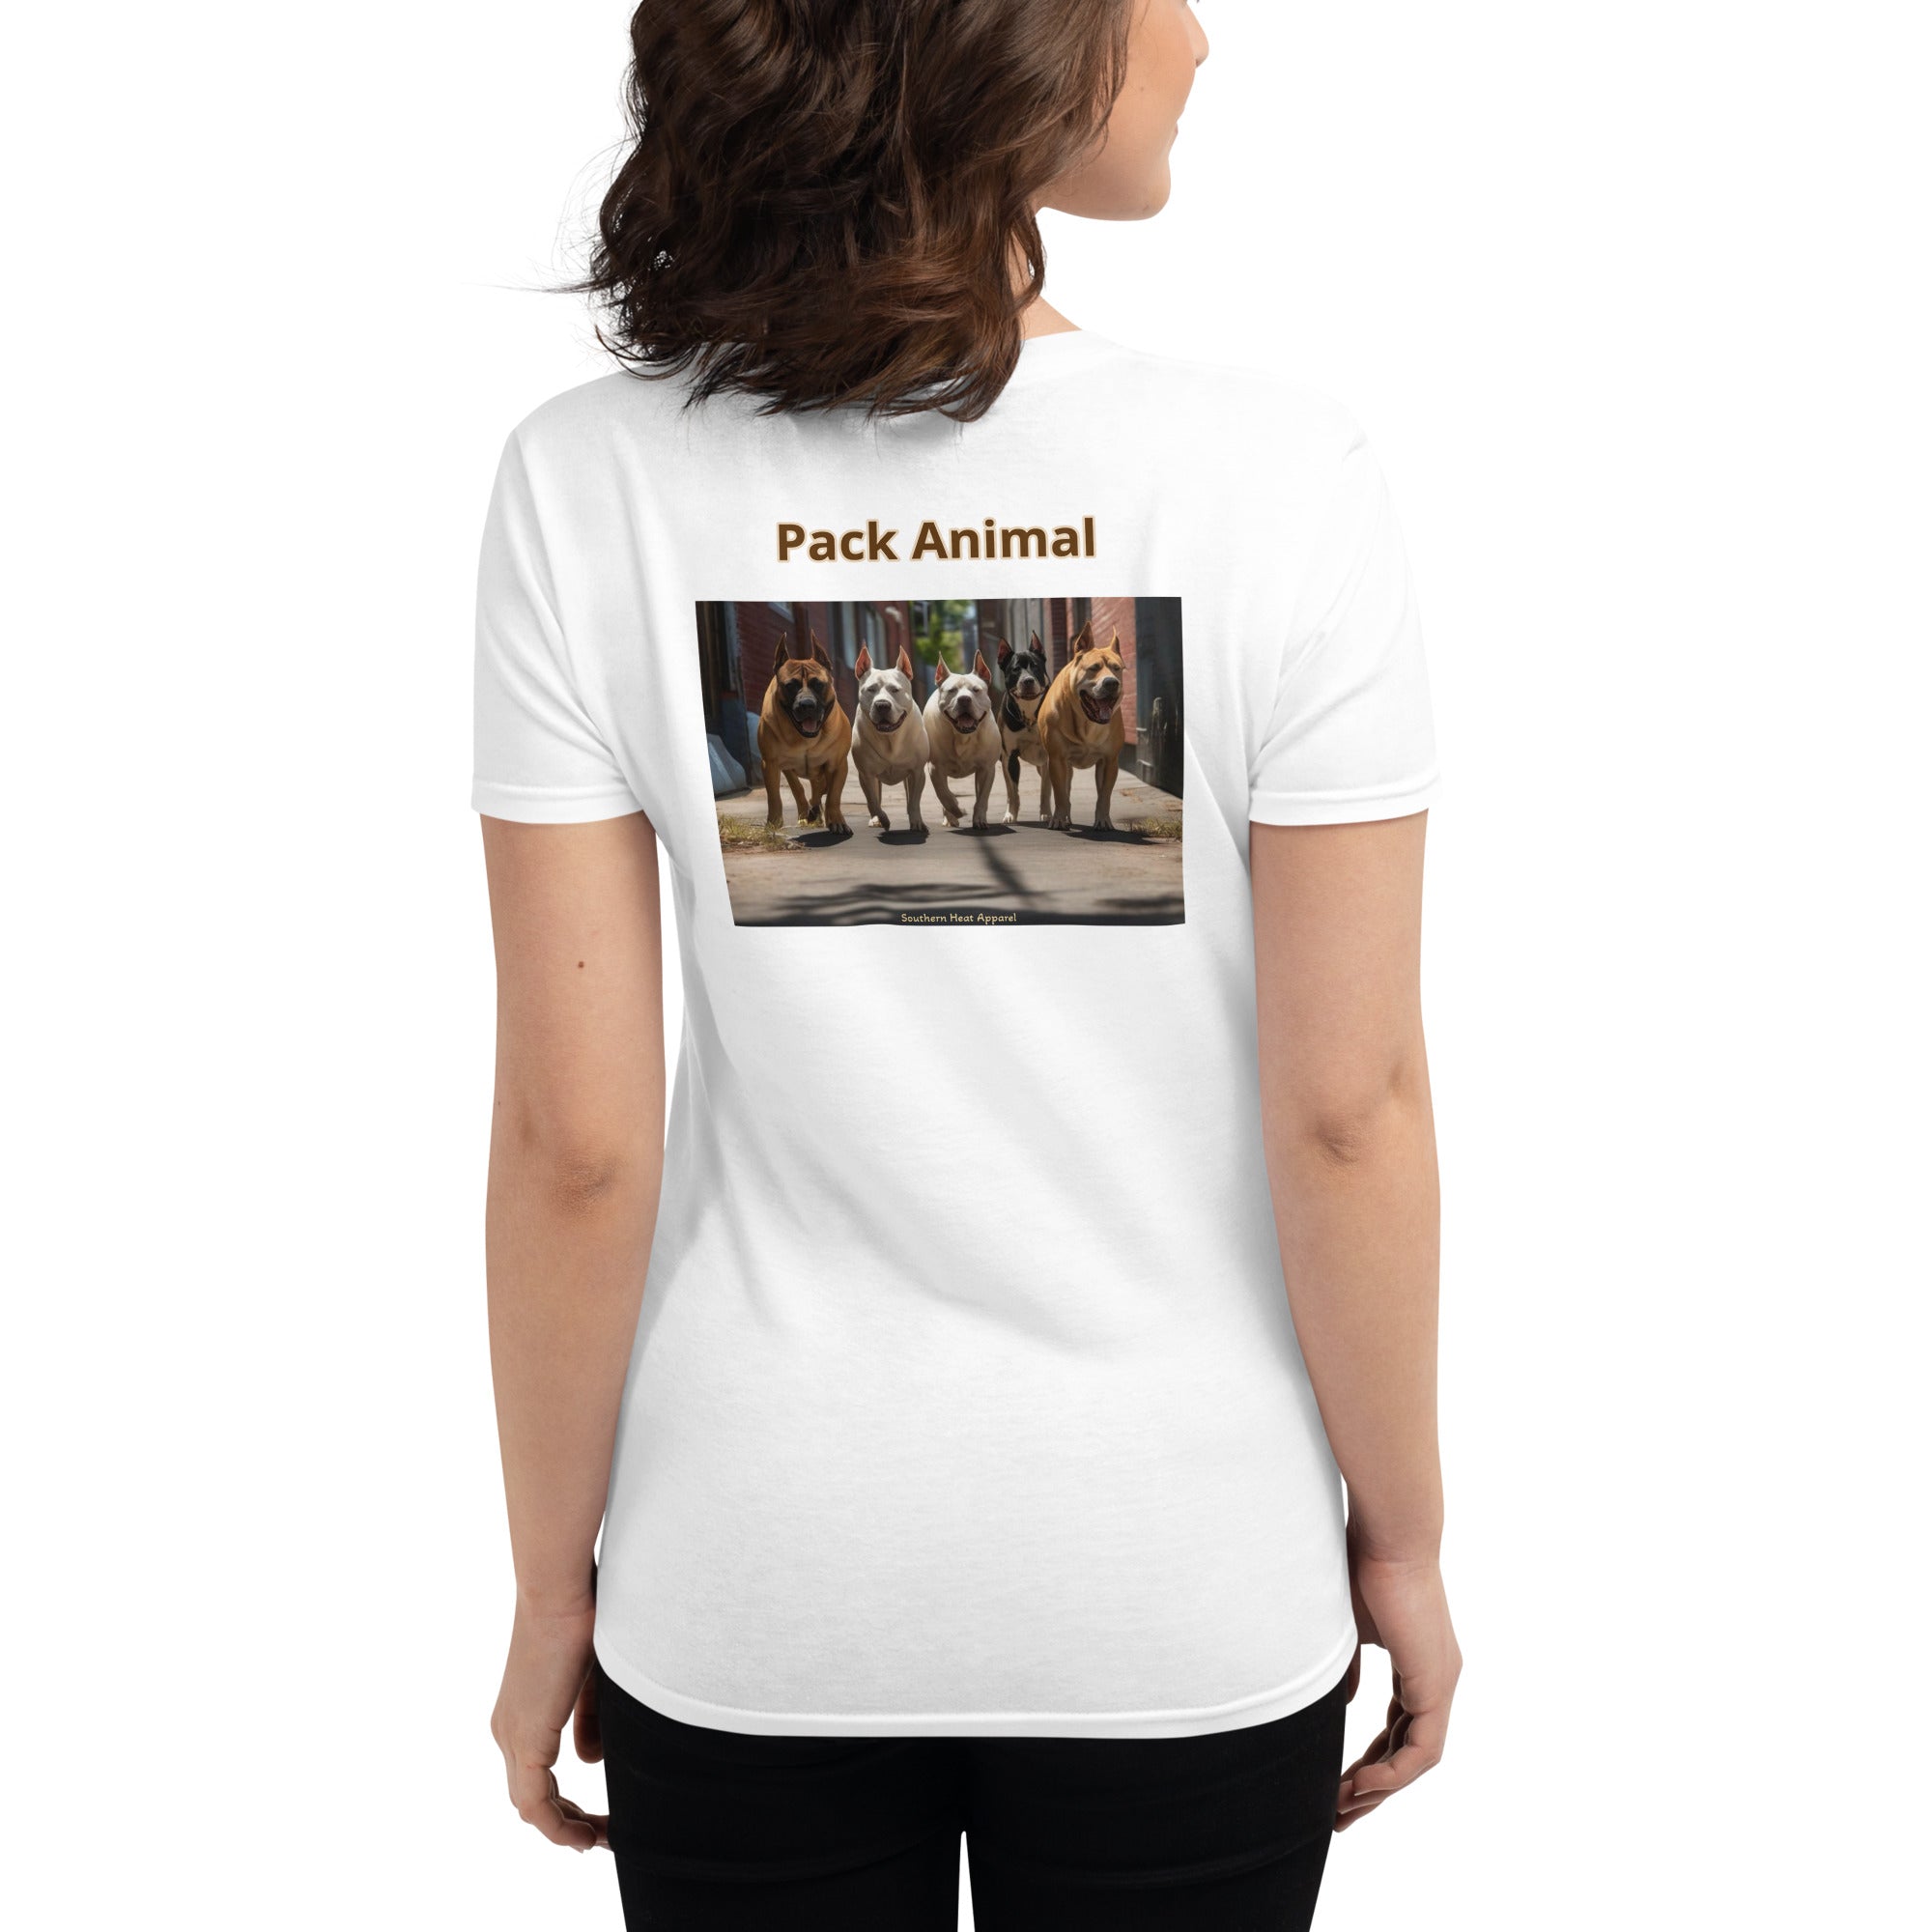 Pack animal-Women's short sleeve t-shirt